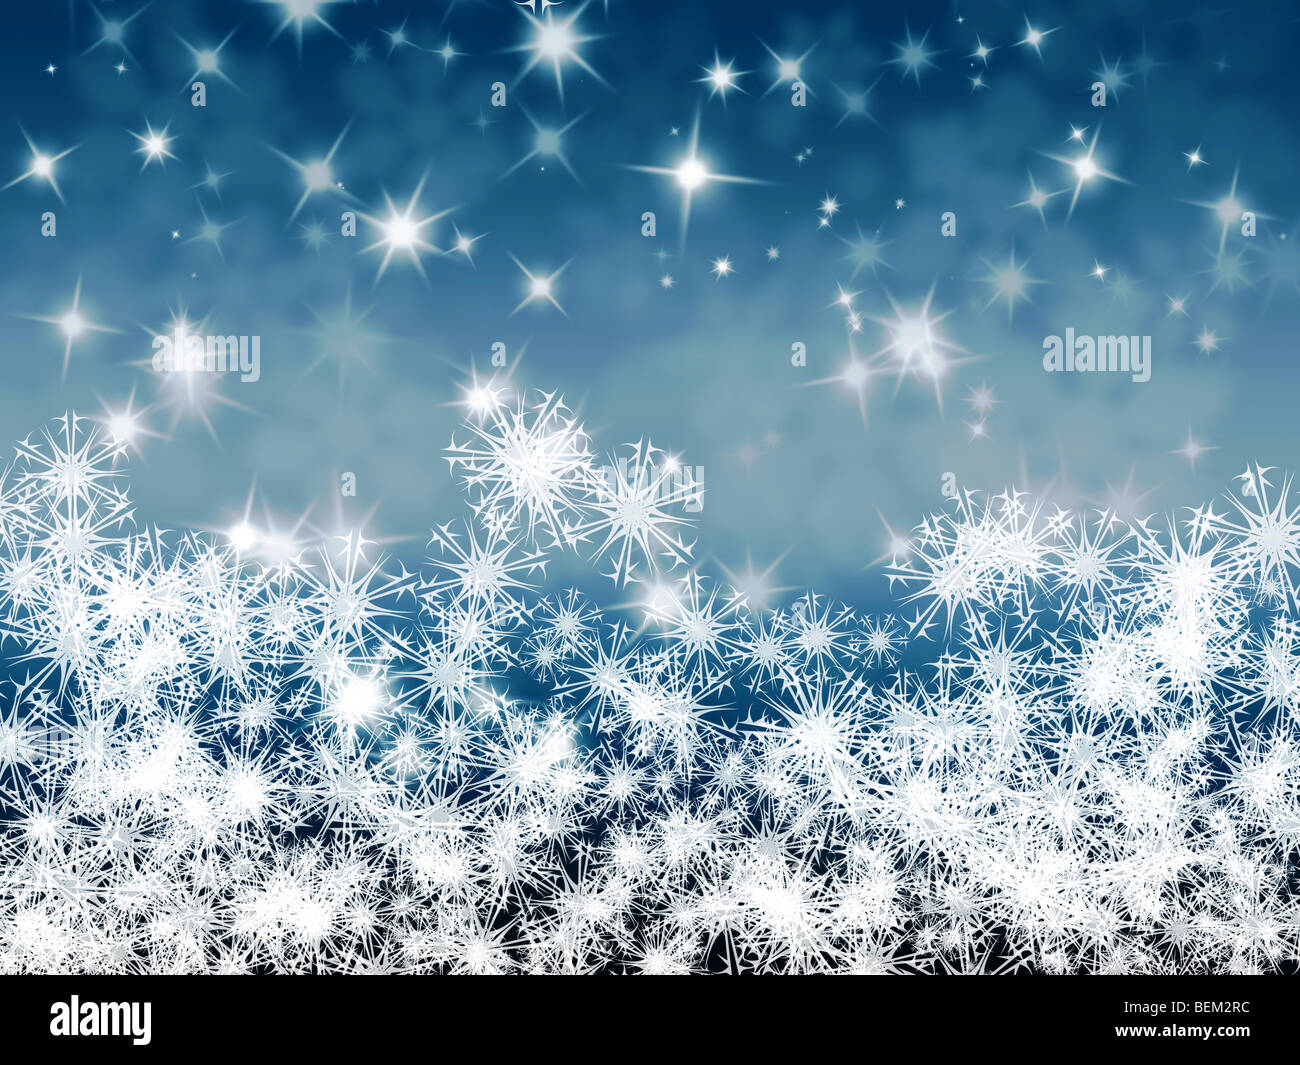 Blauer Schneeflocken Weihnachten Hintergrund mit Funken und Sterne auf der  Hintergrund jedoch unscharf Stockfotografie - Alamy